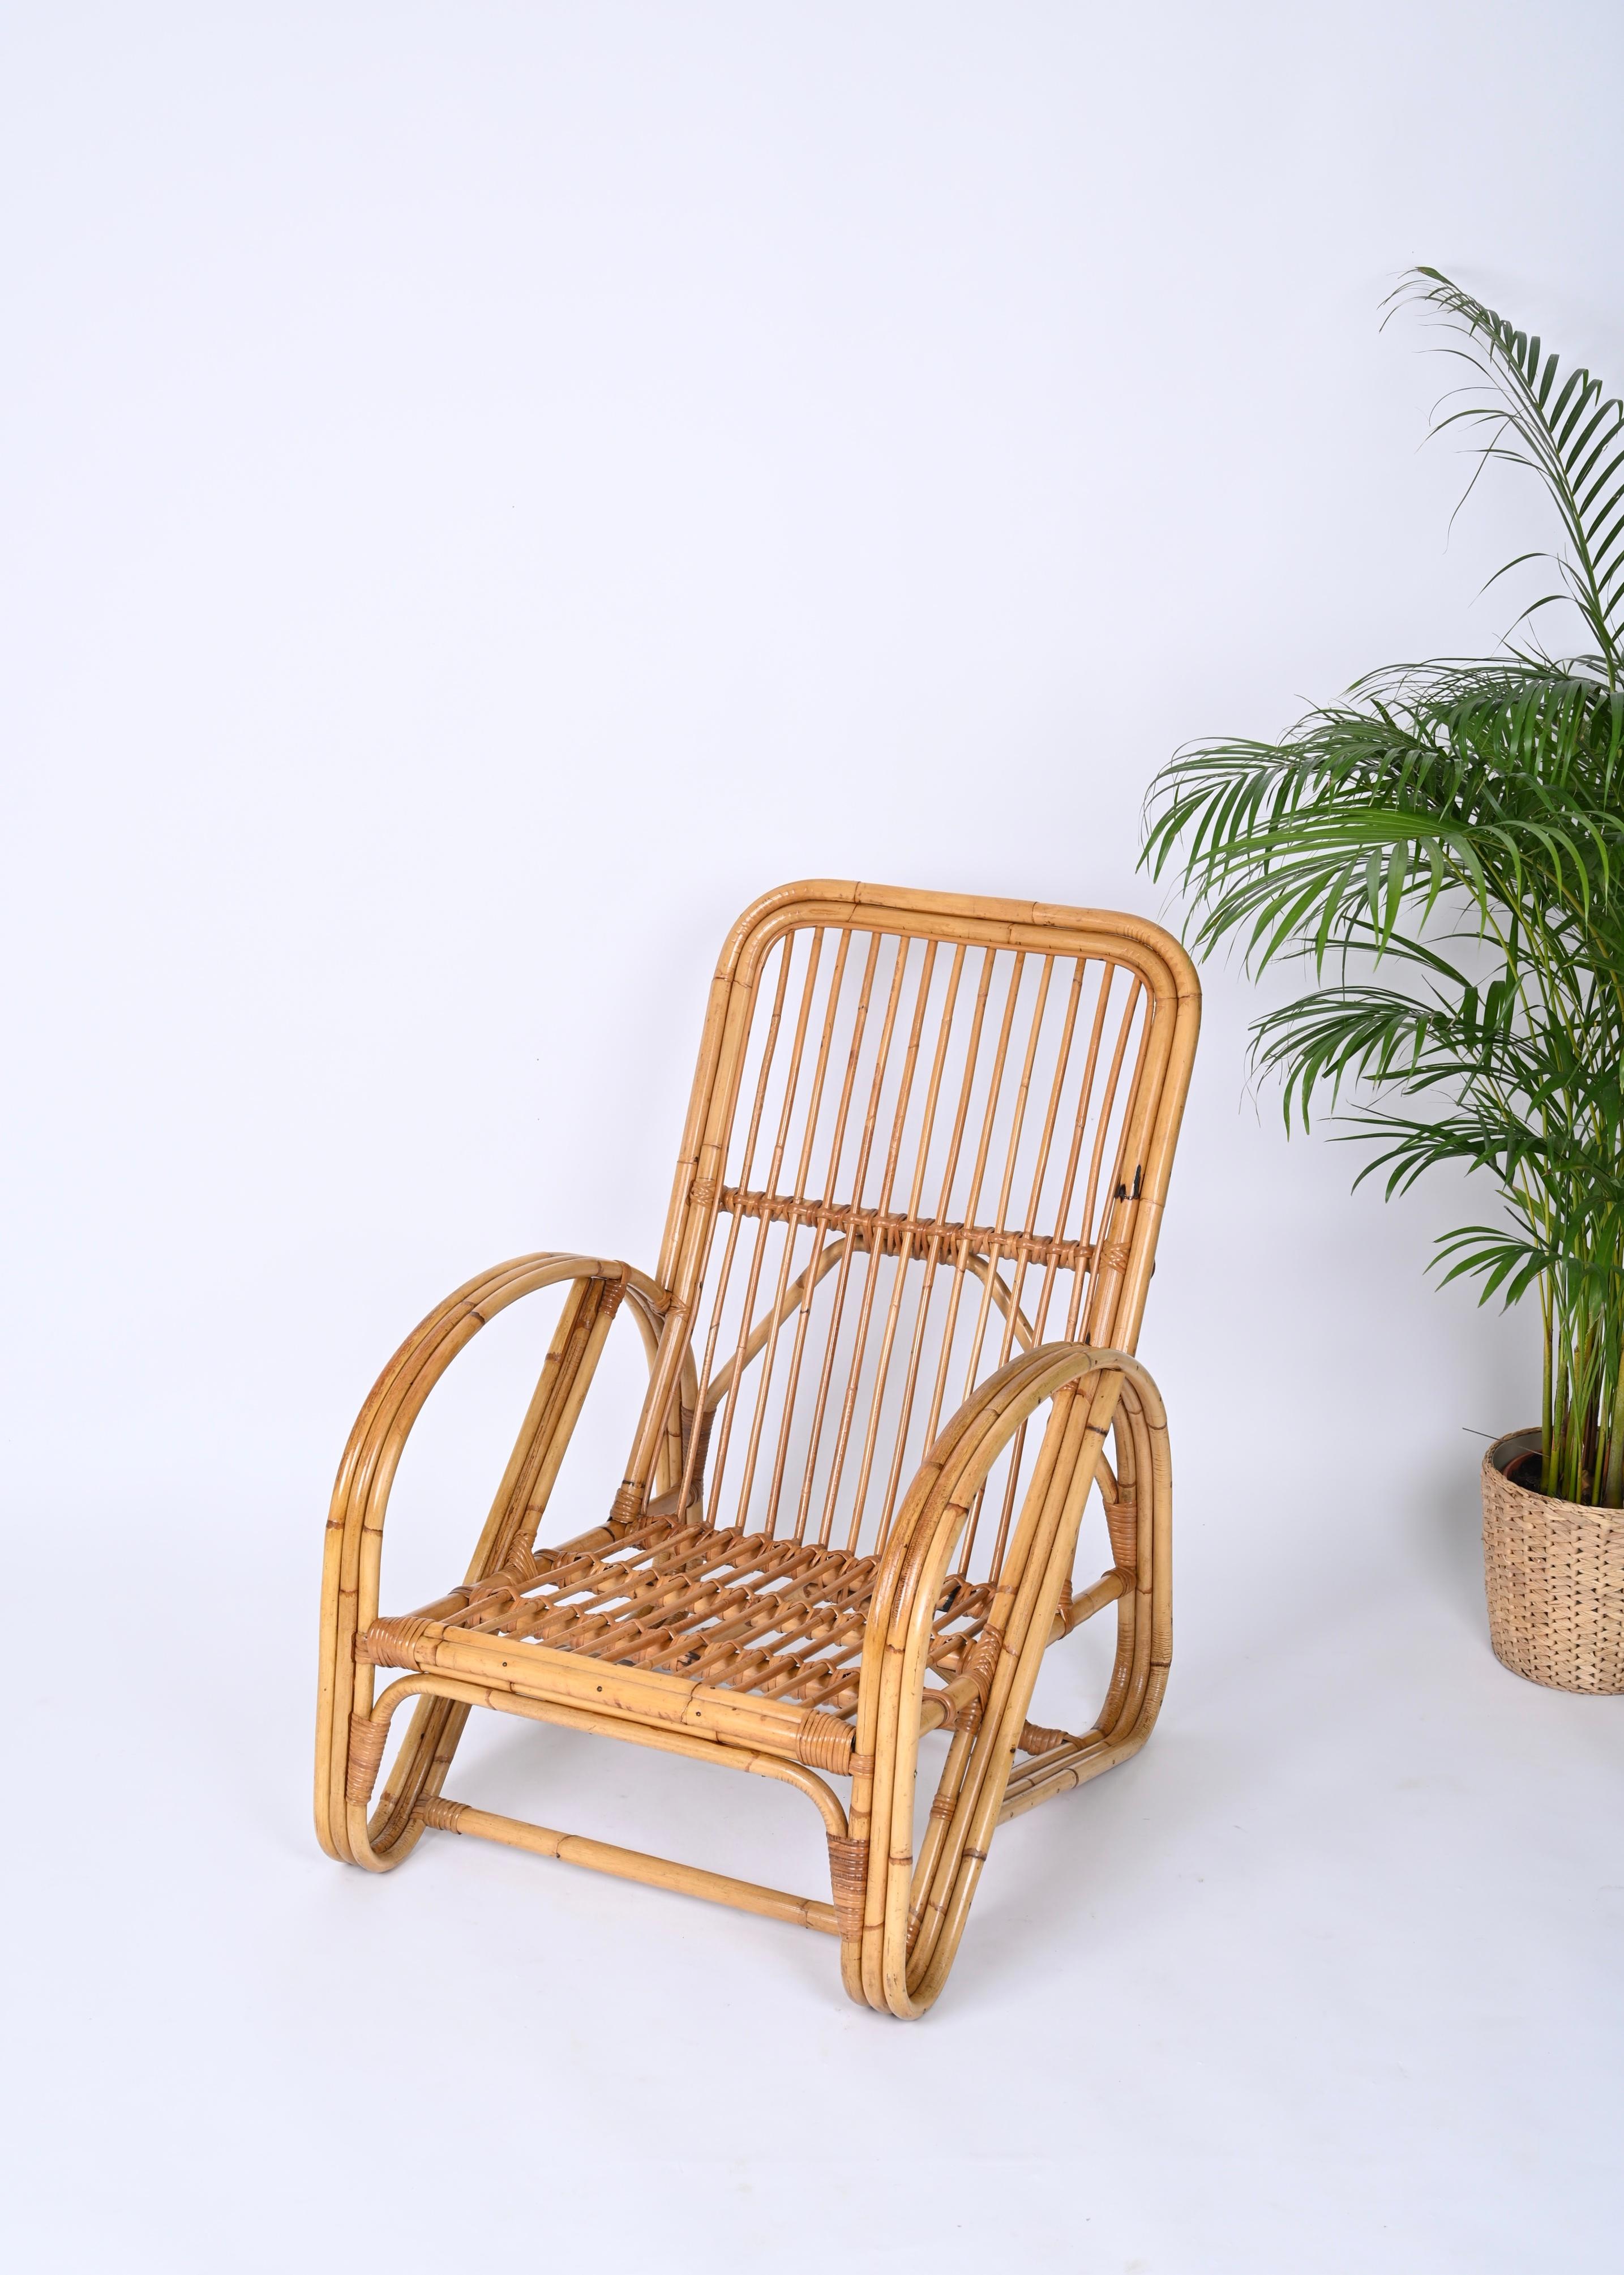 Fantastique fauteuil Mid-Century en bambou et rotin. Ce superbe fauteuil a été produit par Vivai del Sud en Italie dans les années 1970. 

La structure est entièrement réalisée en bambou courbé aux proportions parfaites. La beauté de ce fauteuil est